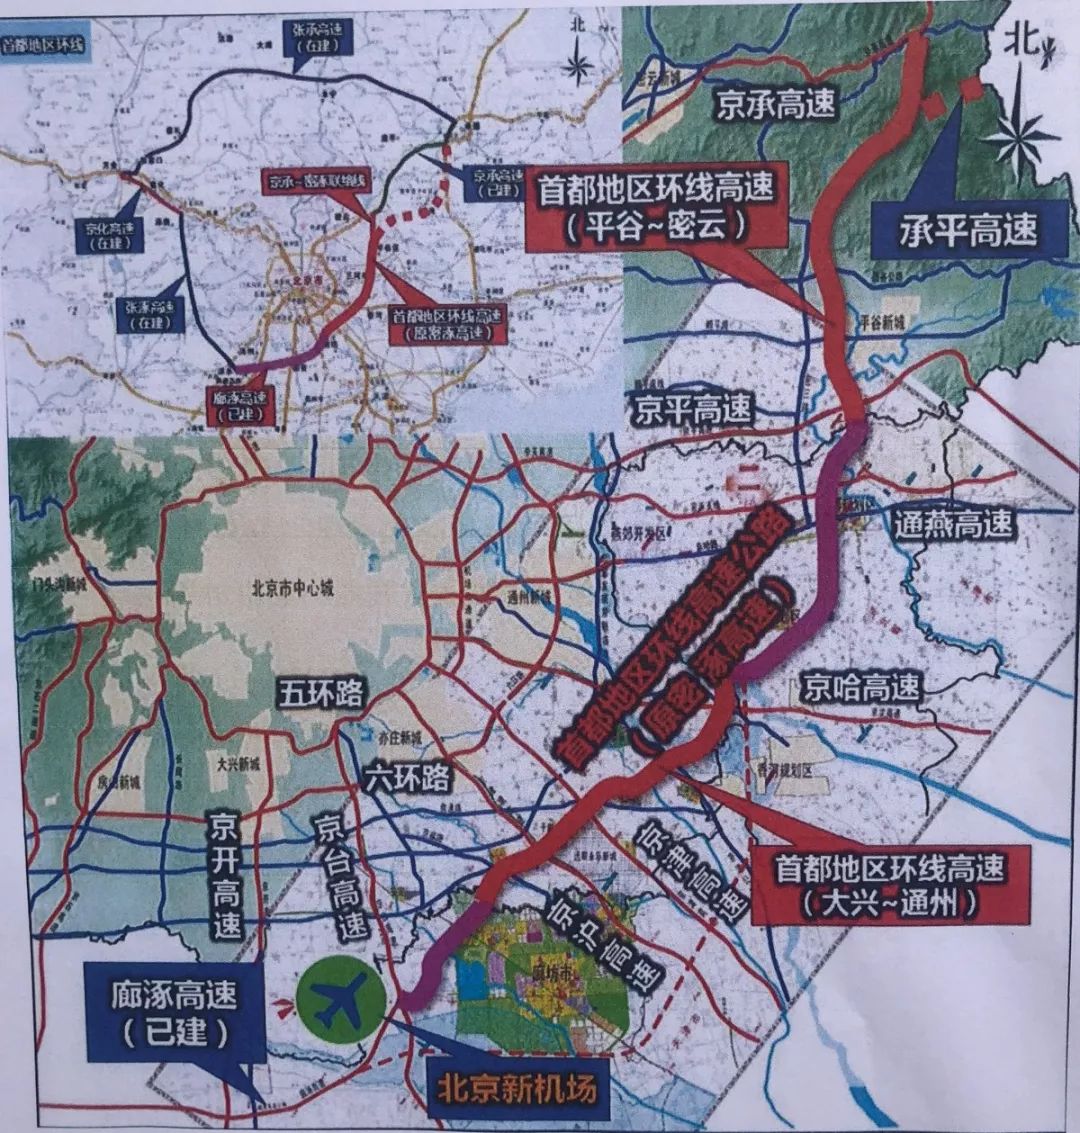 首都地区环线高速公路(北京段)示意图图片